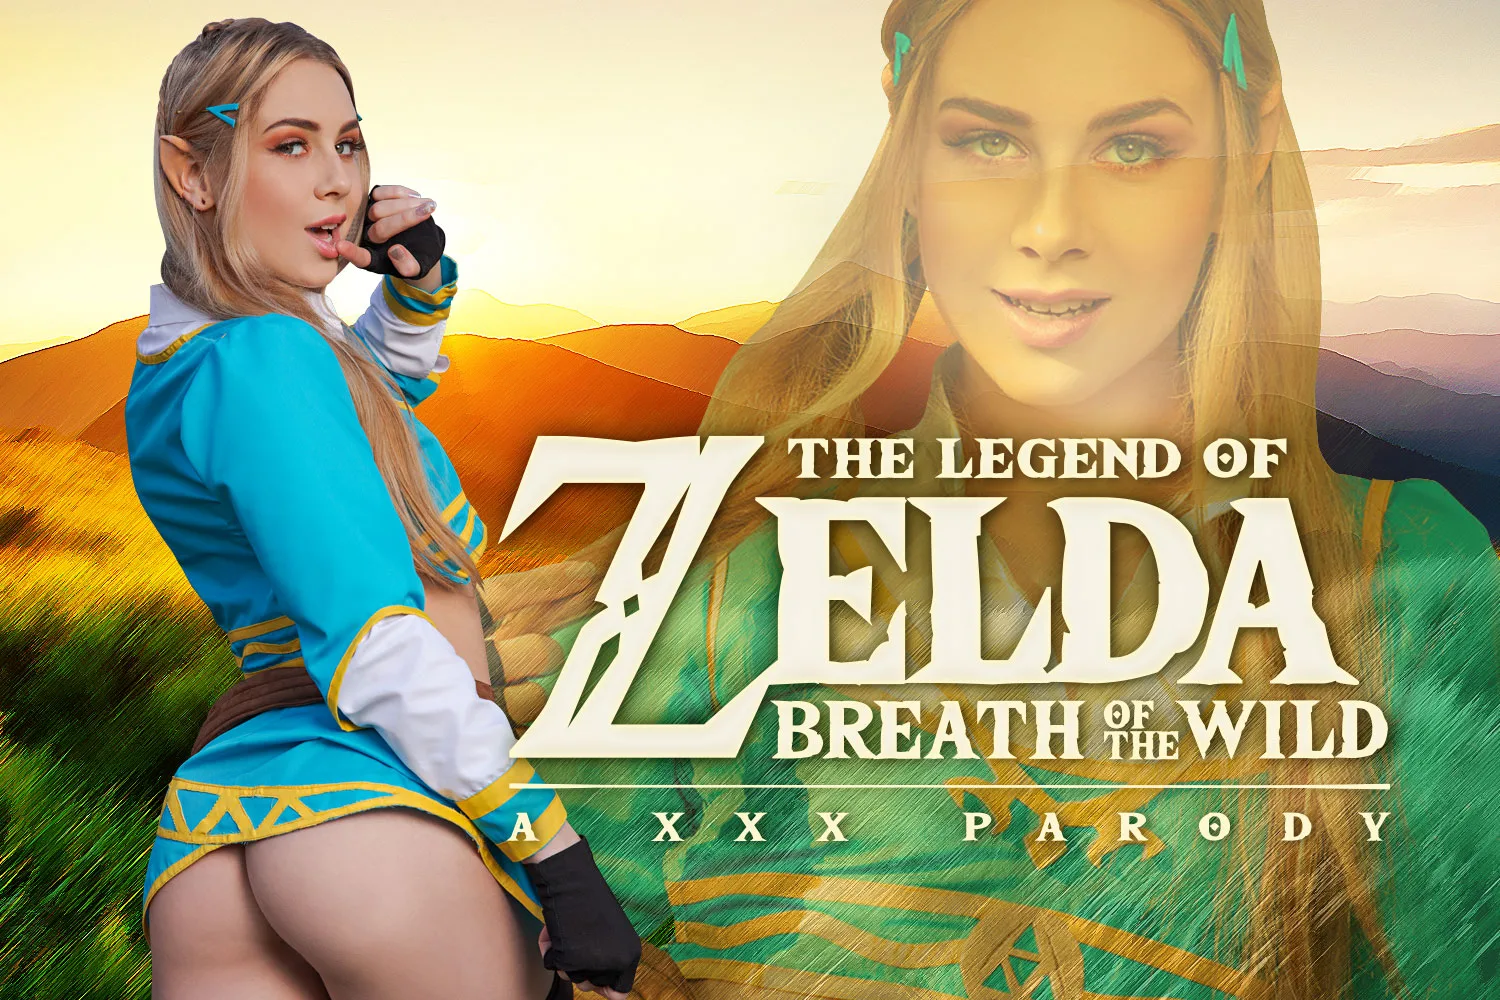 [2020-02-21] Zelda: Breath of the Wild A XXX Parody - VRCosplayX